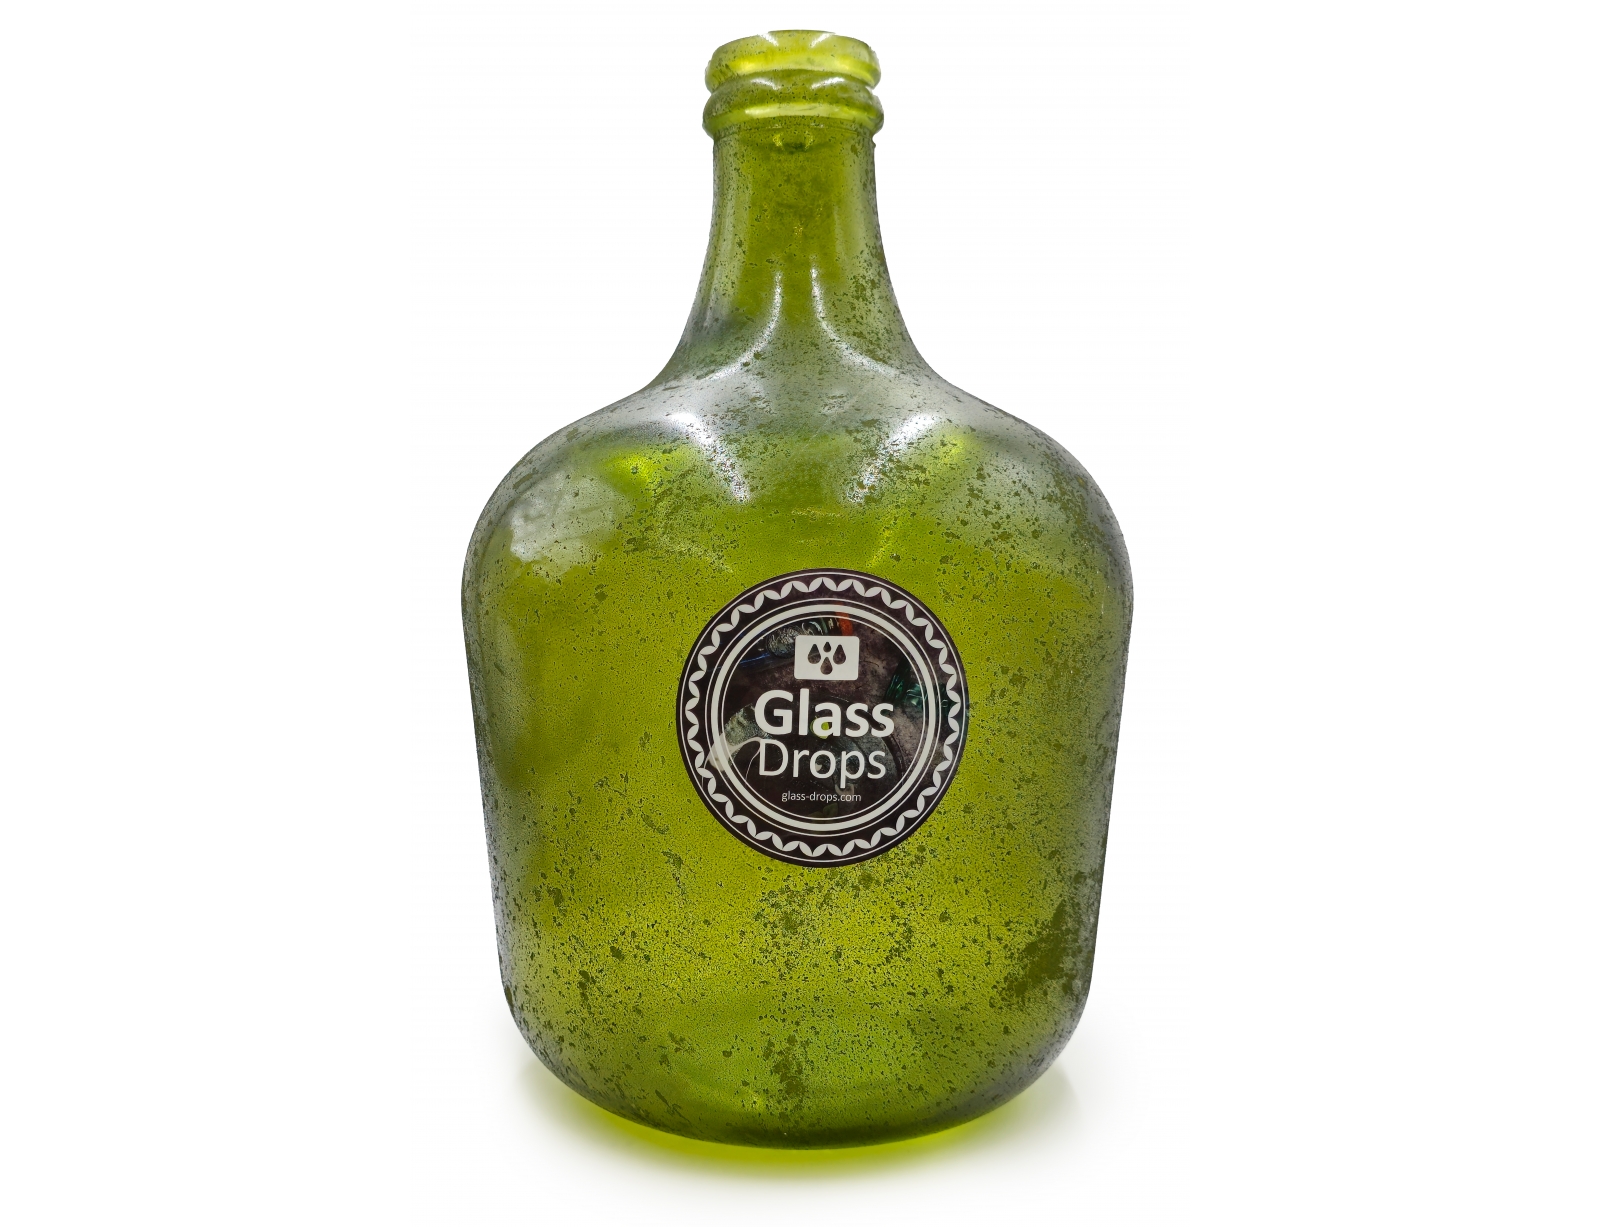 Εικόνα Διακοσμητικό Βάζο Glass Drops Antic (5743F643)  Aπό 100% ανακυκλωμένο γυαλί, Xωρητικότητας 12L, Διαστάσεων Ø 27 x Υ 42 cm, Antic Forest Green